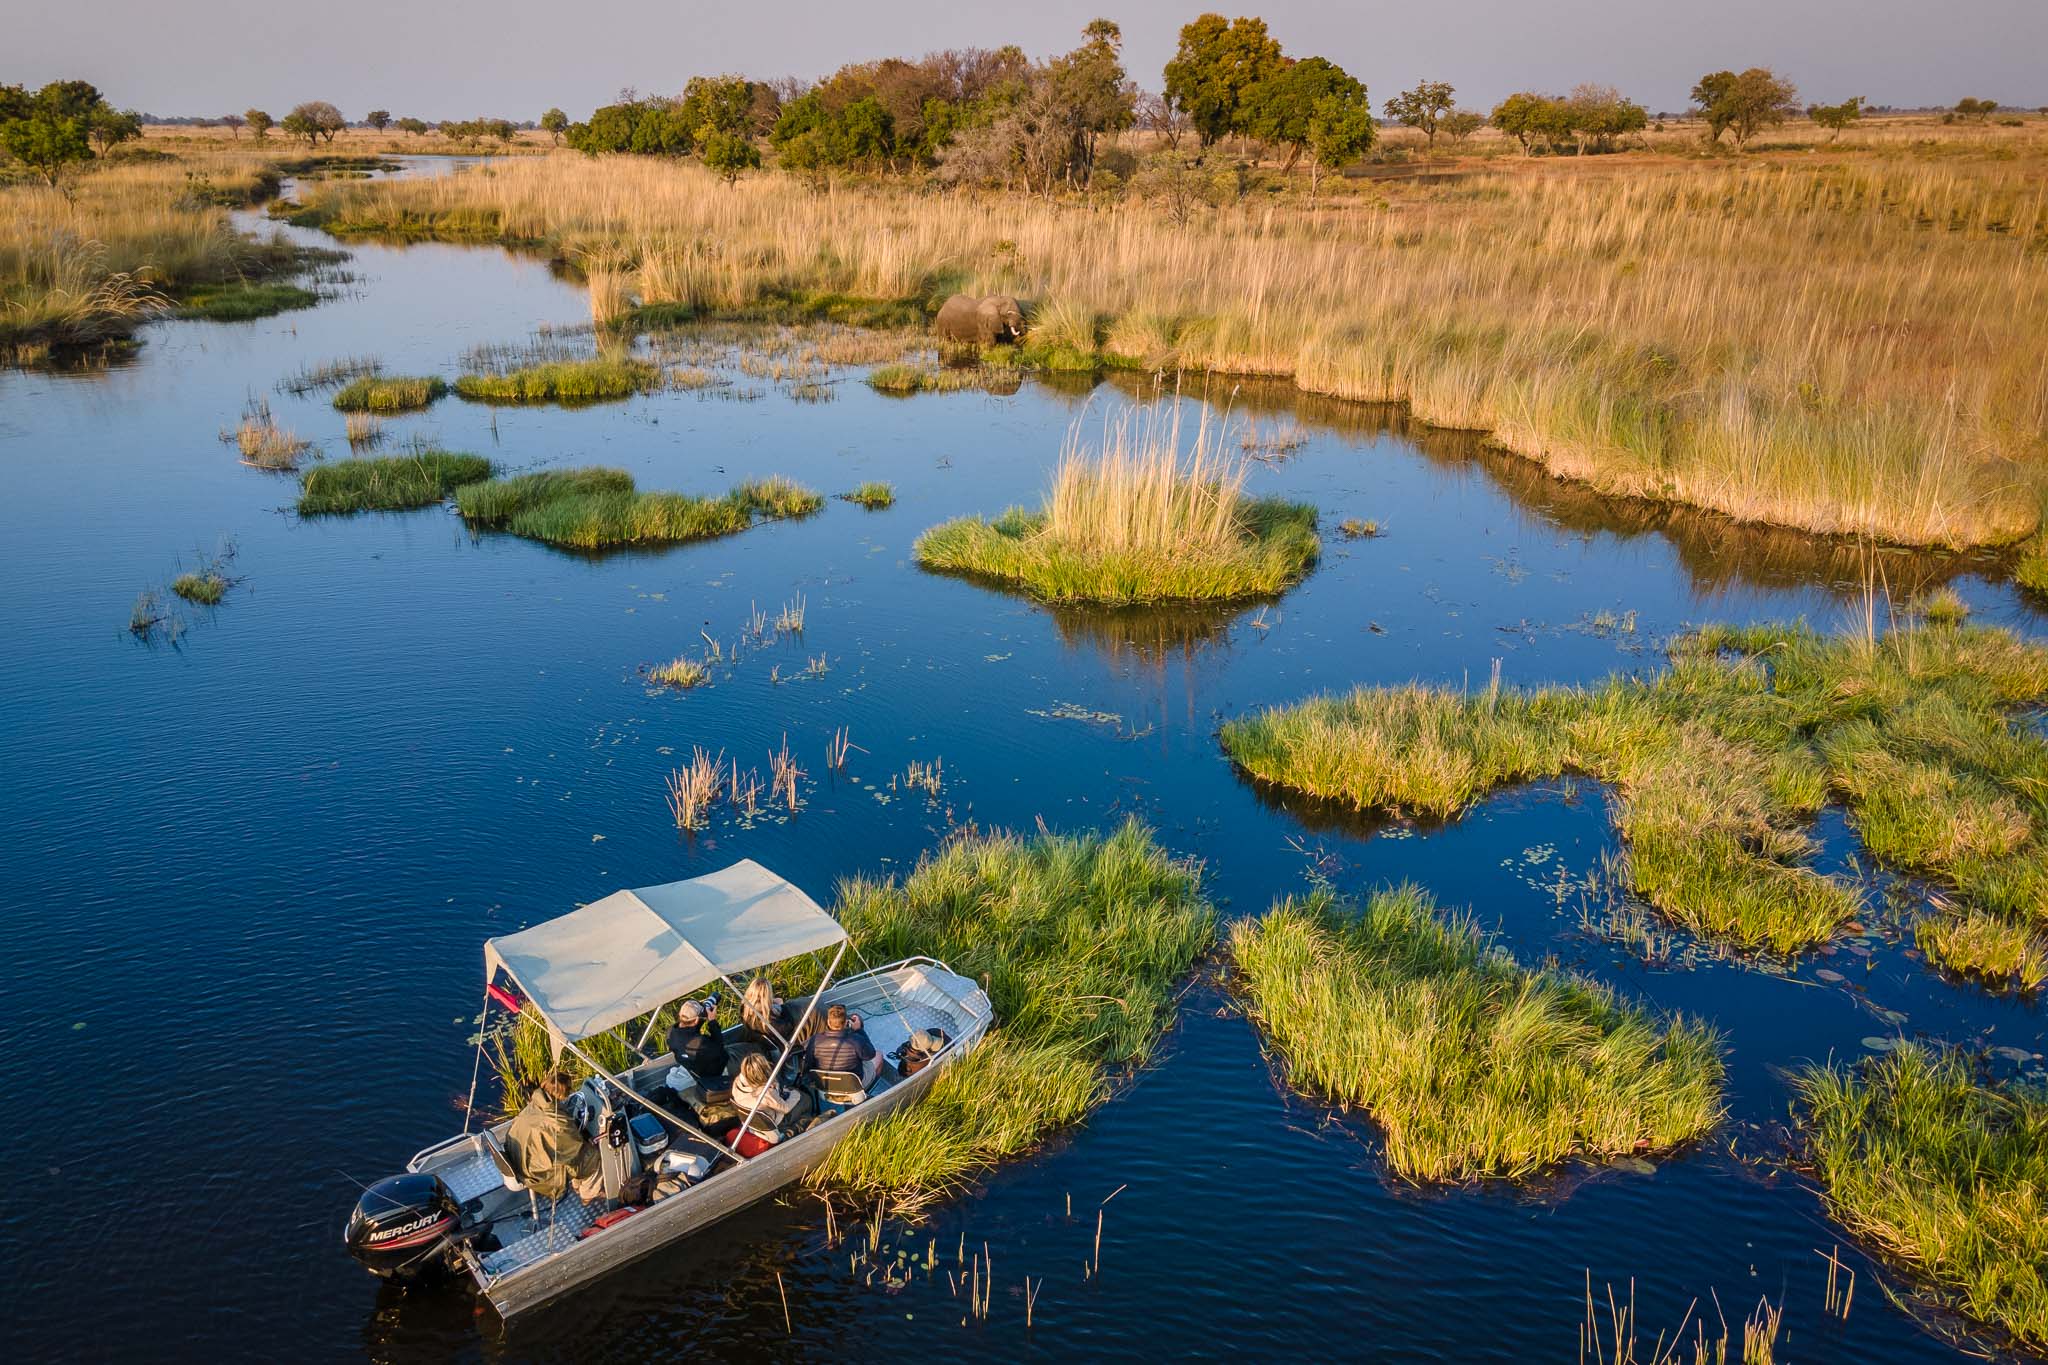 Boating on the Okavango Delta